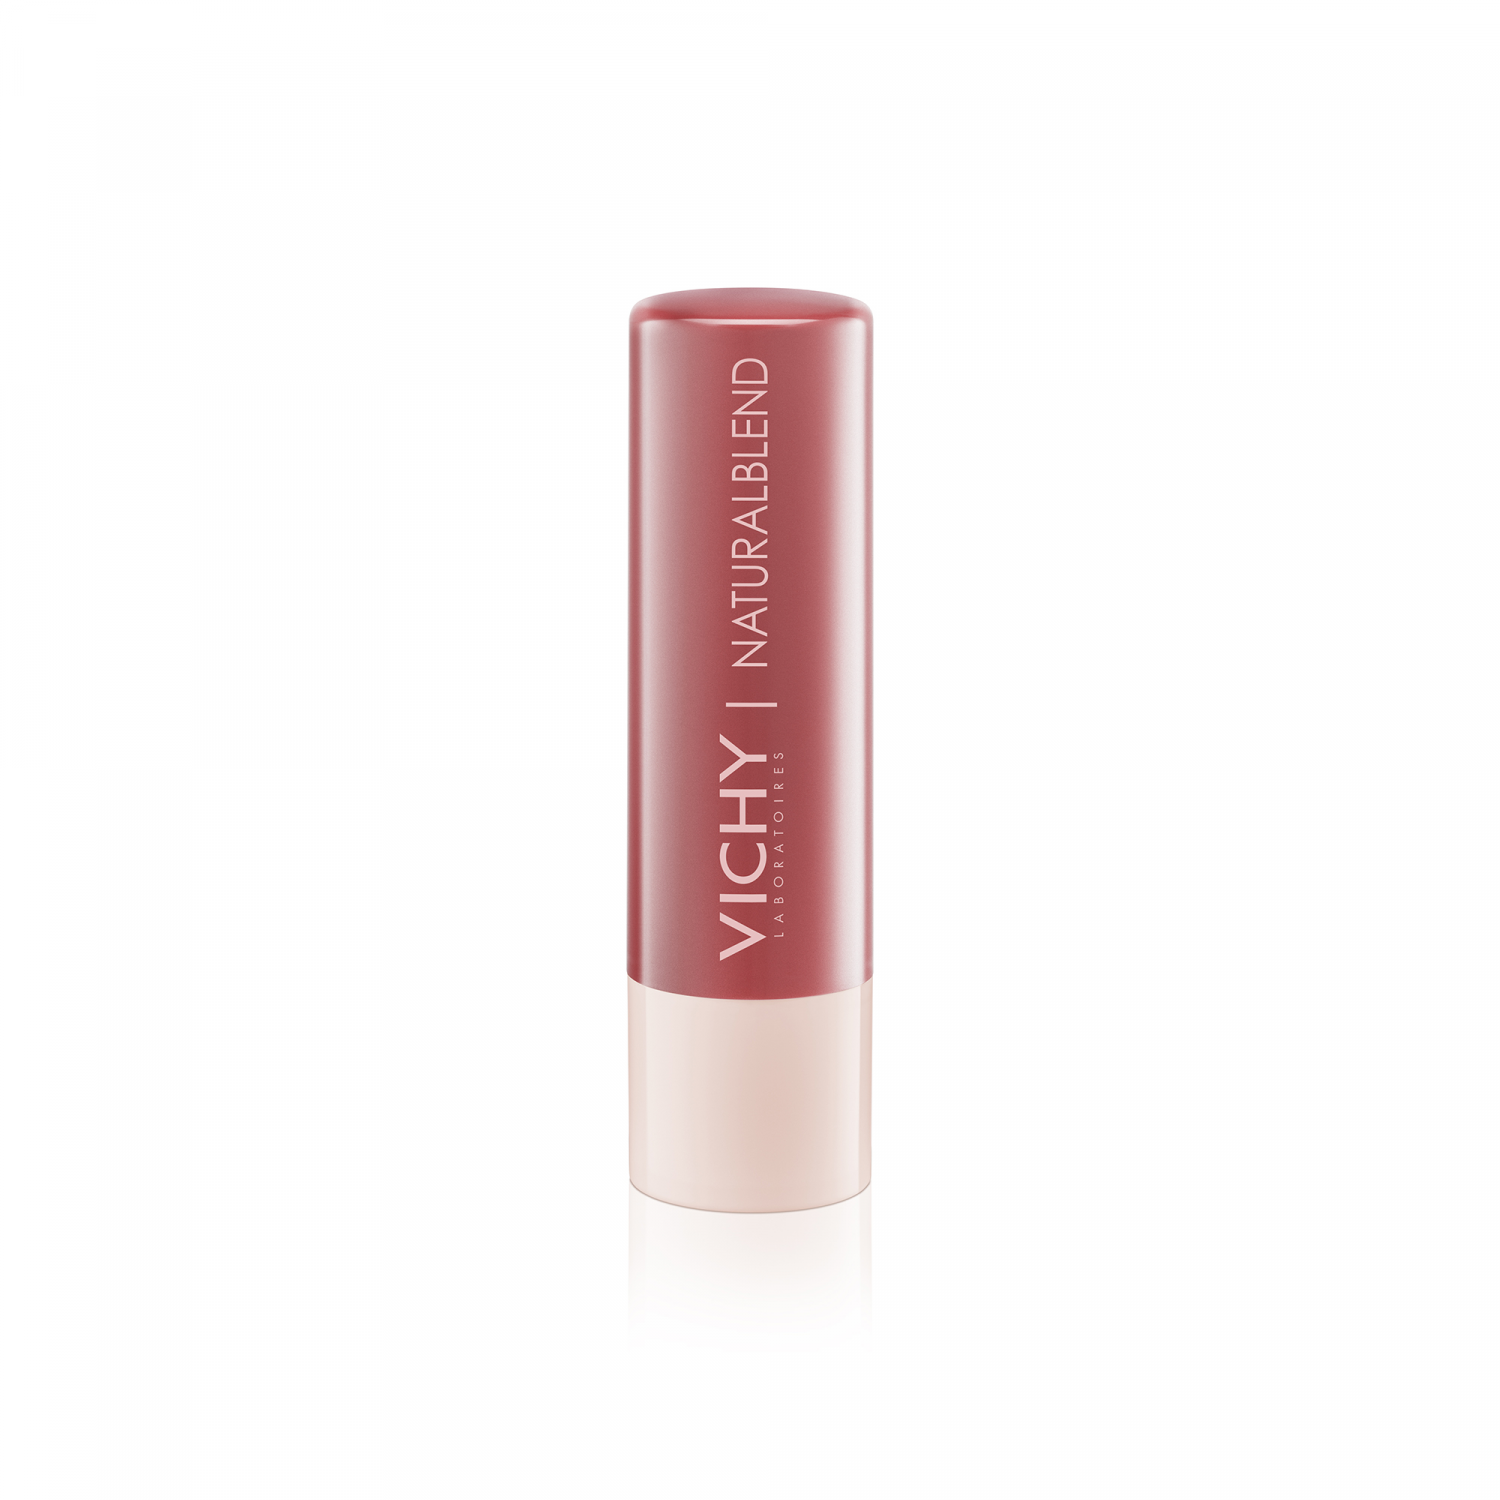 Soin des lèvres teinté naturalblend nude Vichy - tube de 4,5 g